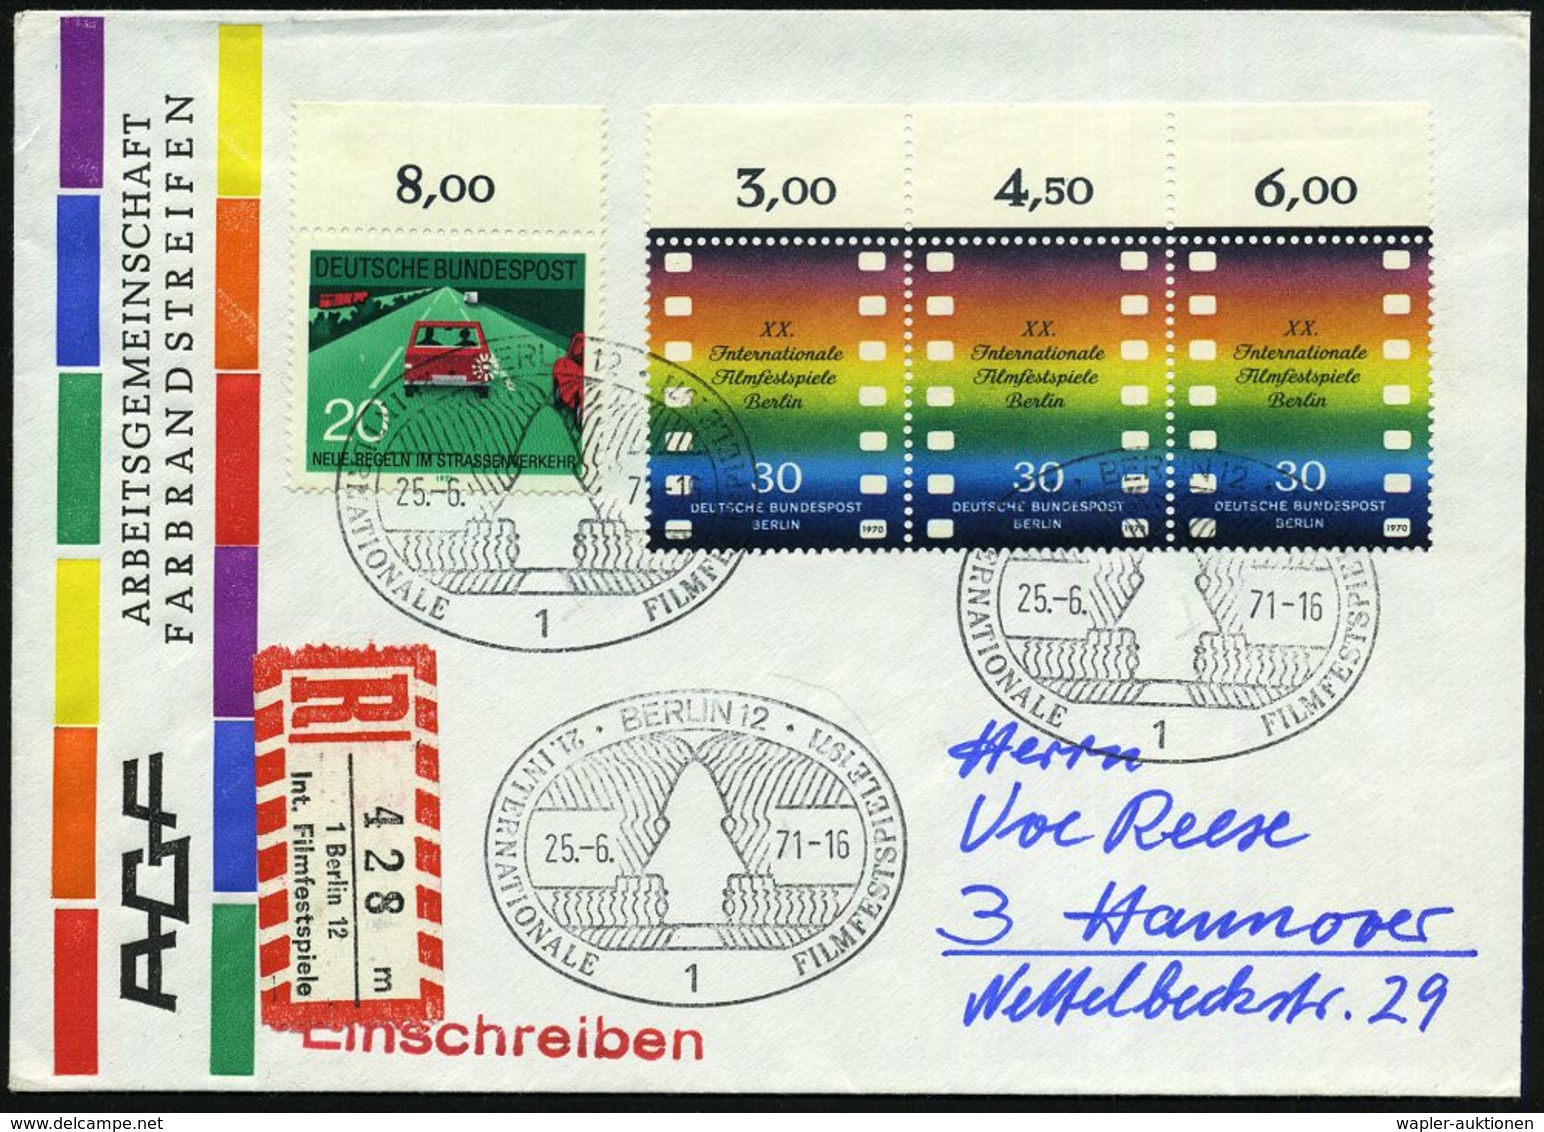 FILMFESTSPIELE / FILMKONGRESSE : 1 BERLIN 12/ 21.INTERNAT.FILMFESTSPIELE 1971 (25.6.) SSt Auf Rand-3er-Streifen 30 Pf. F - Cinema